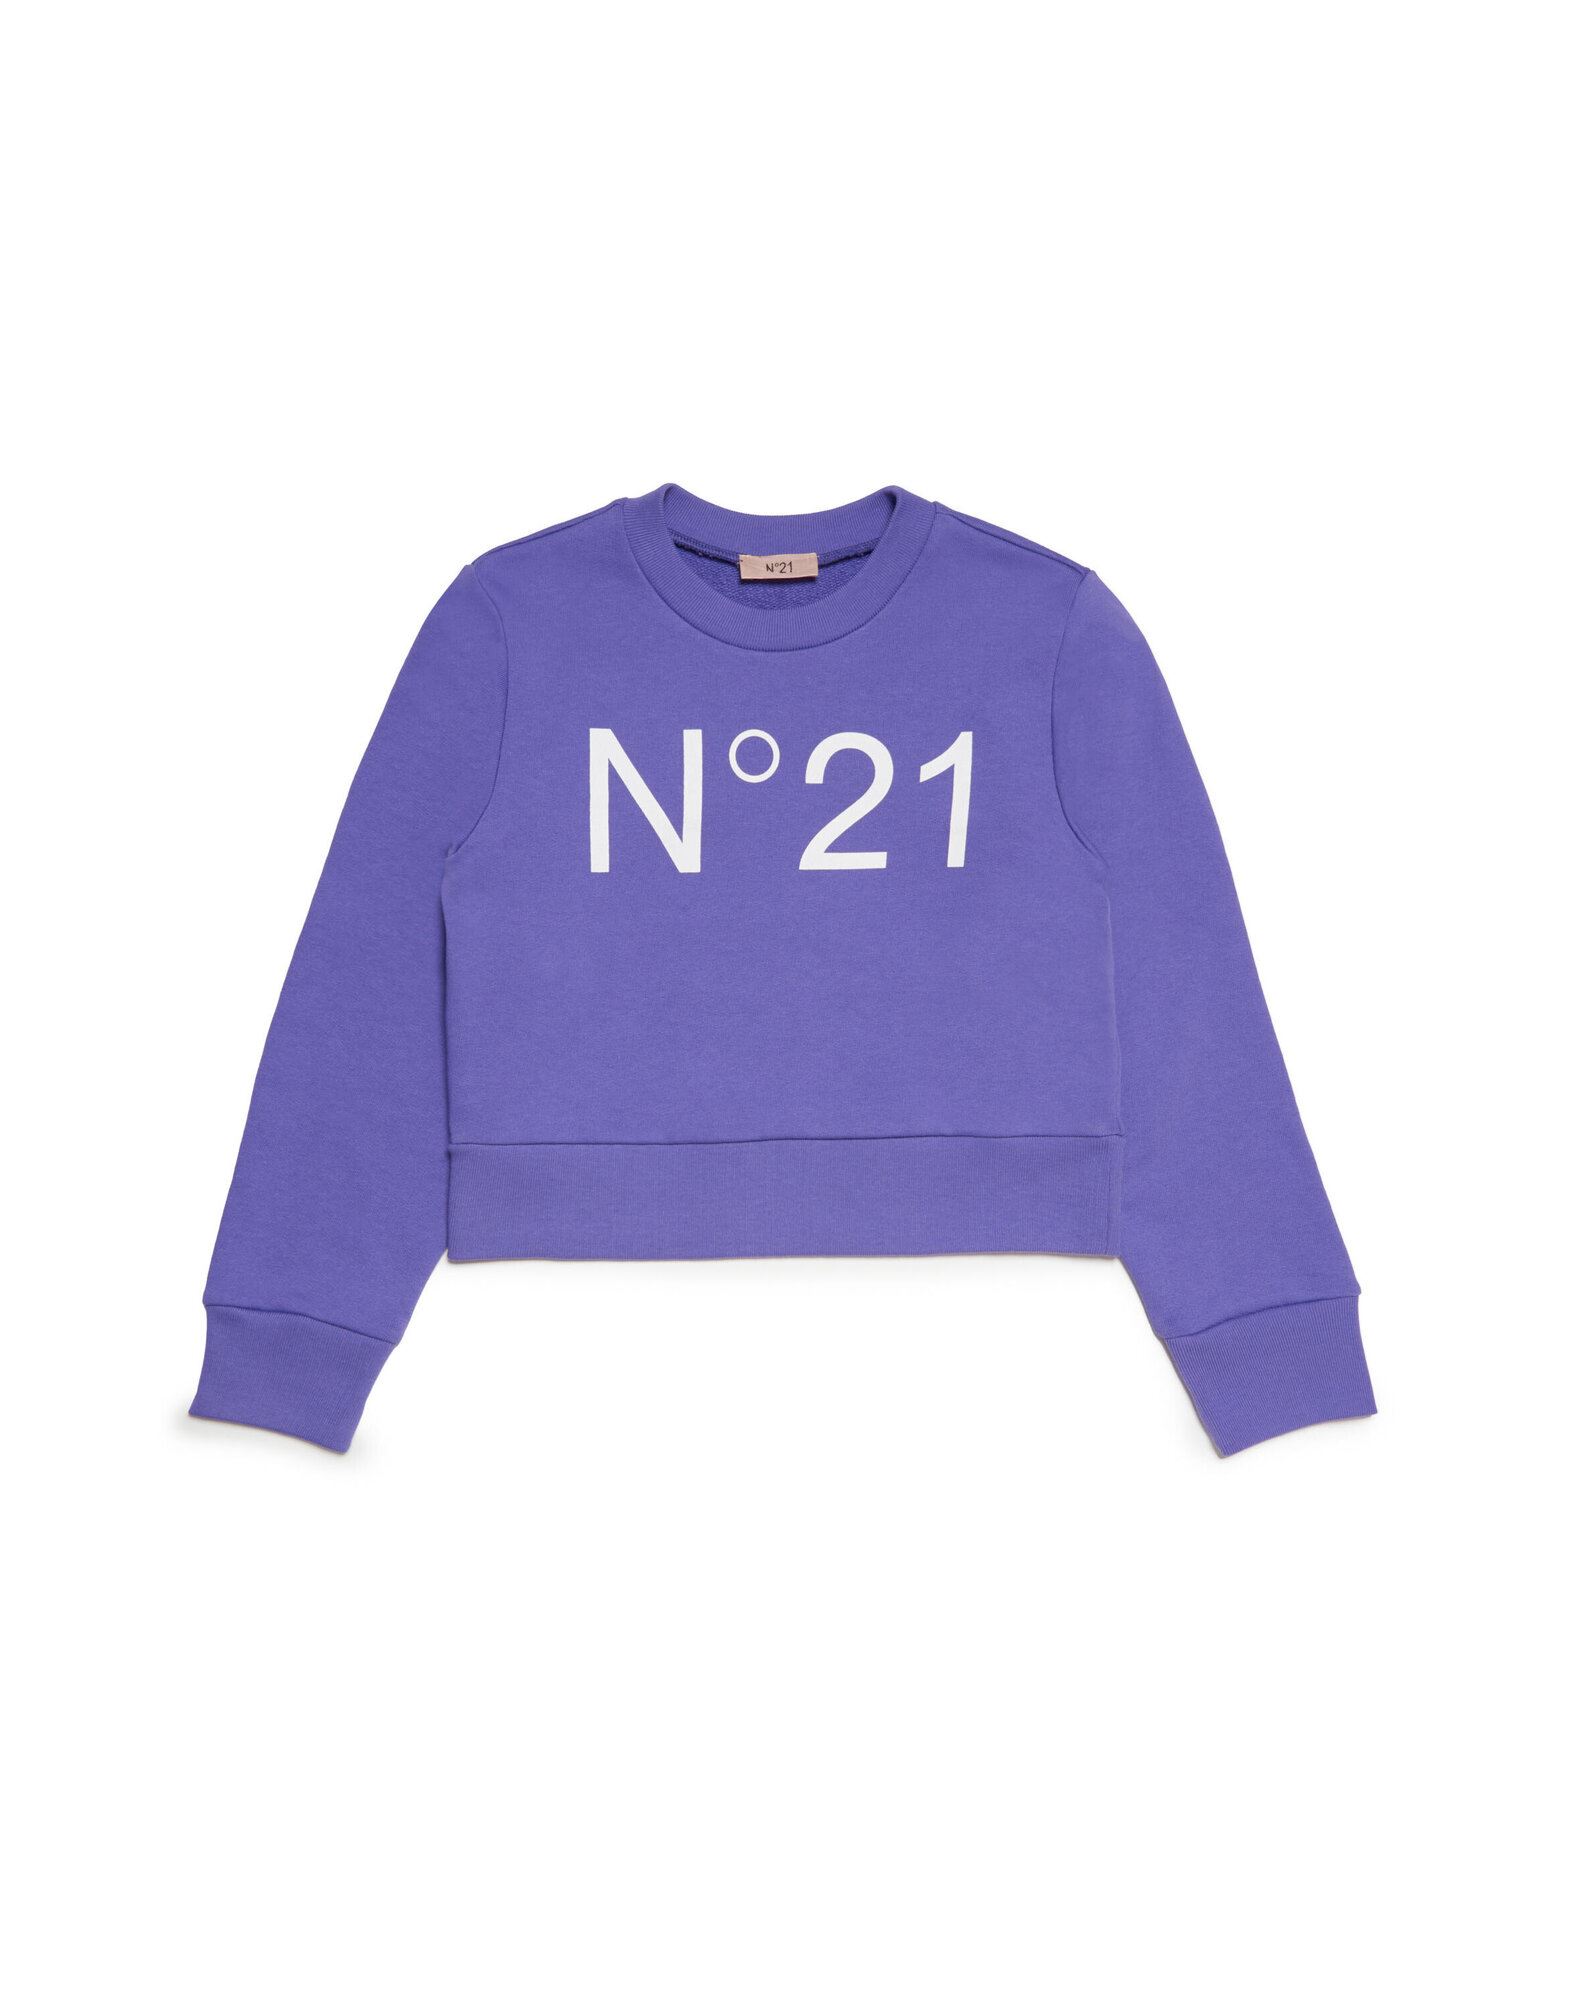 N°21 Sweatshirt Kinder Violett von N°21